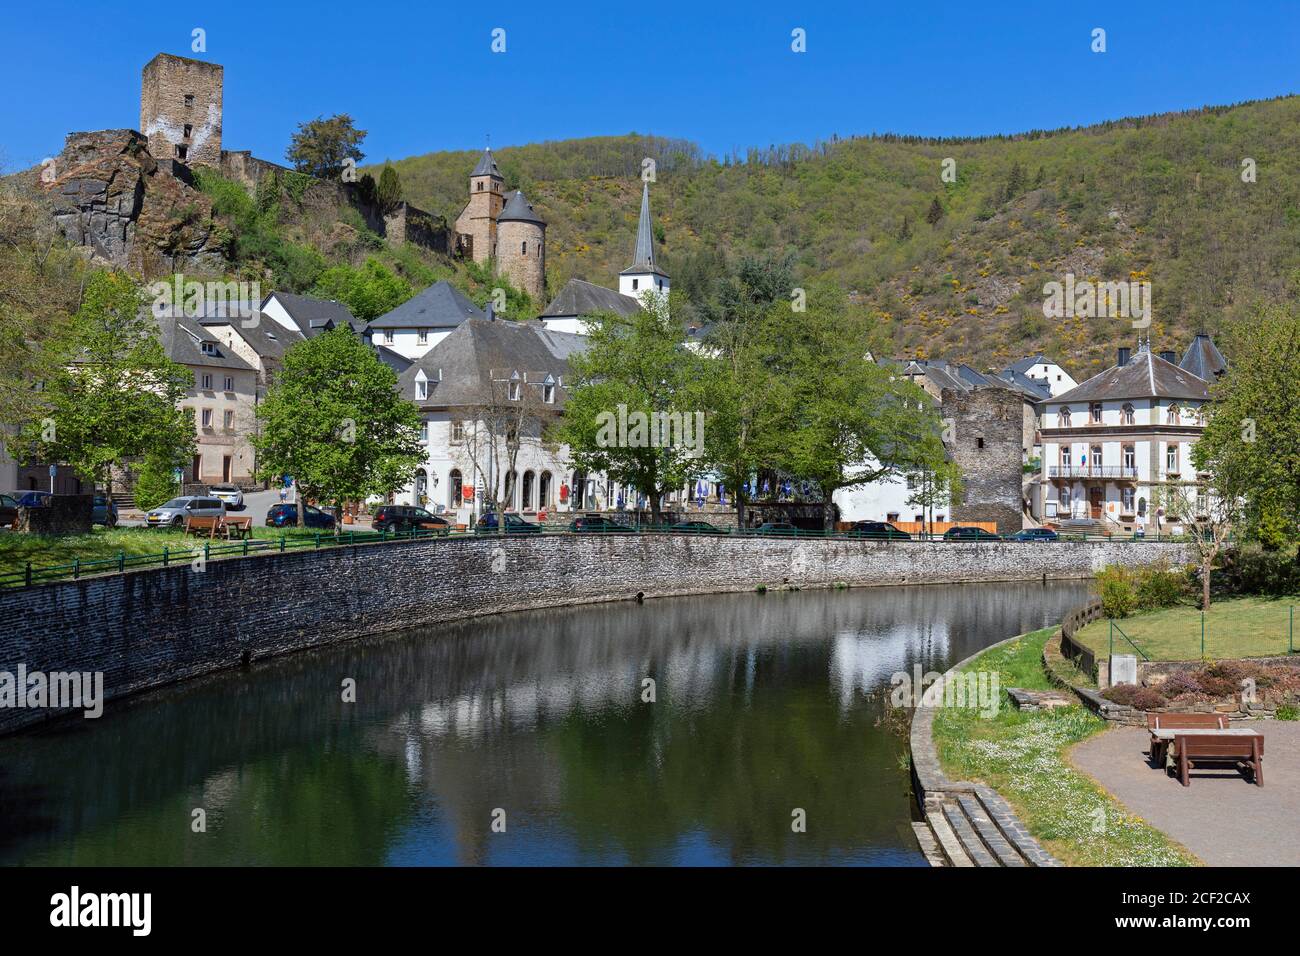 Europa, Lussemburgo, Diekirch, Esch-sur-Sûre, vista sul fiume Sûre e sul centro del villaggio. Foto Stock